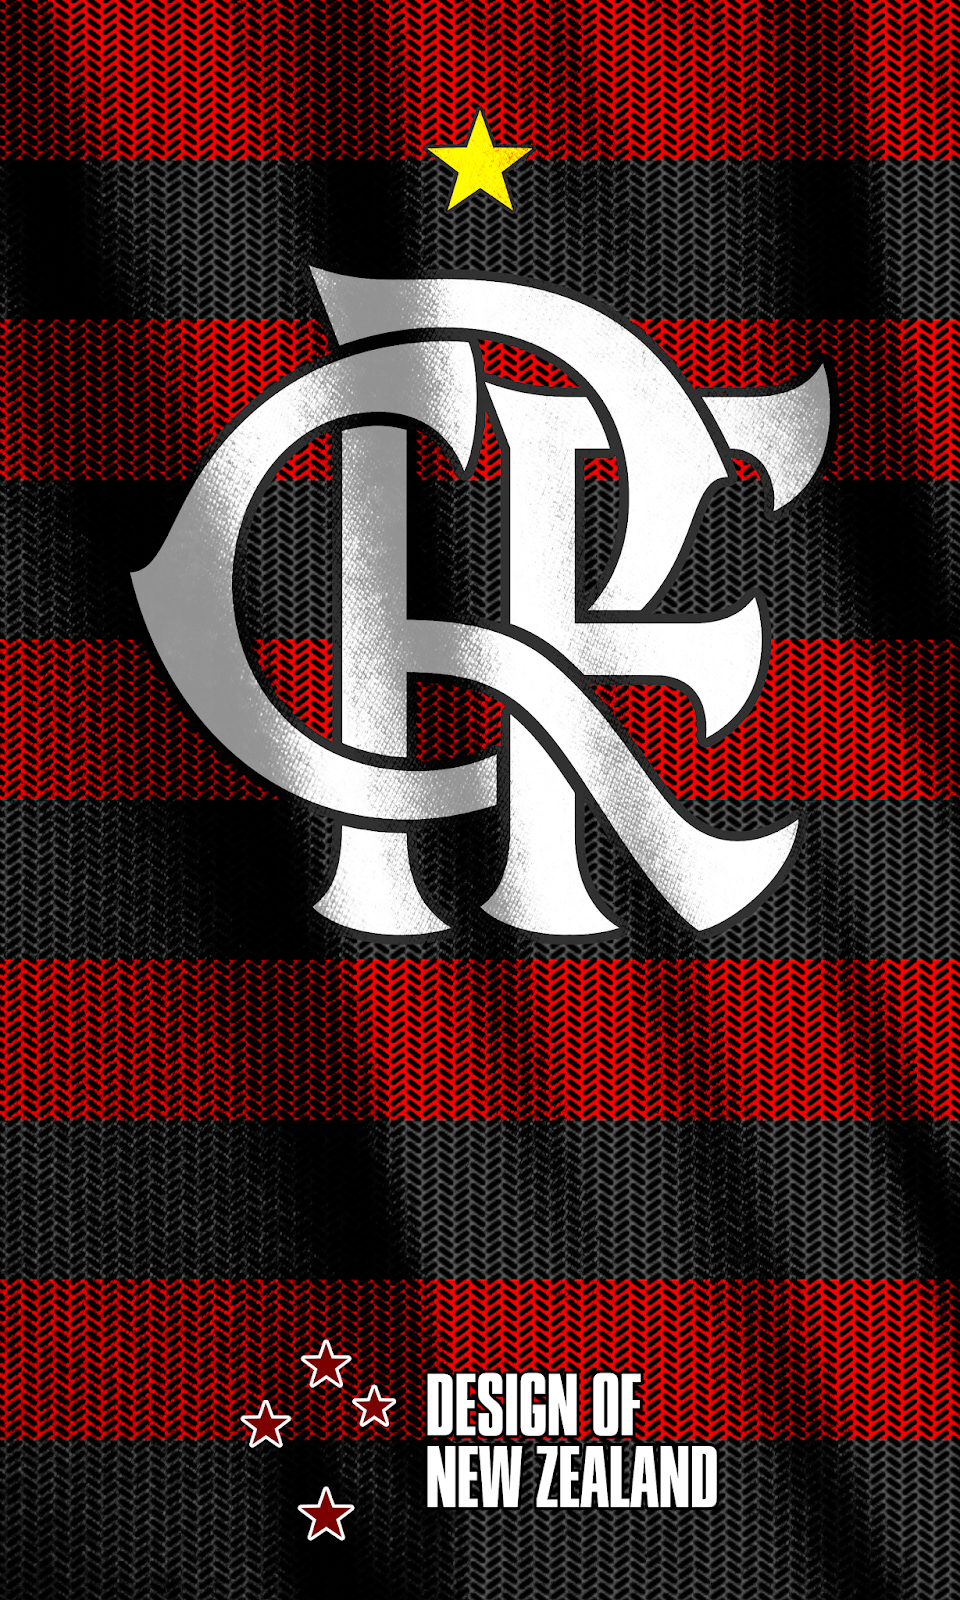 Melhores wallpaper do Flamengo 2019 para celular Android em 4K em 2020. Isso aqui é flamengo, Framengo, Flamengo